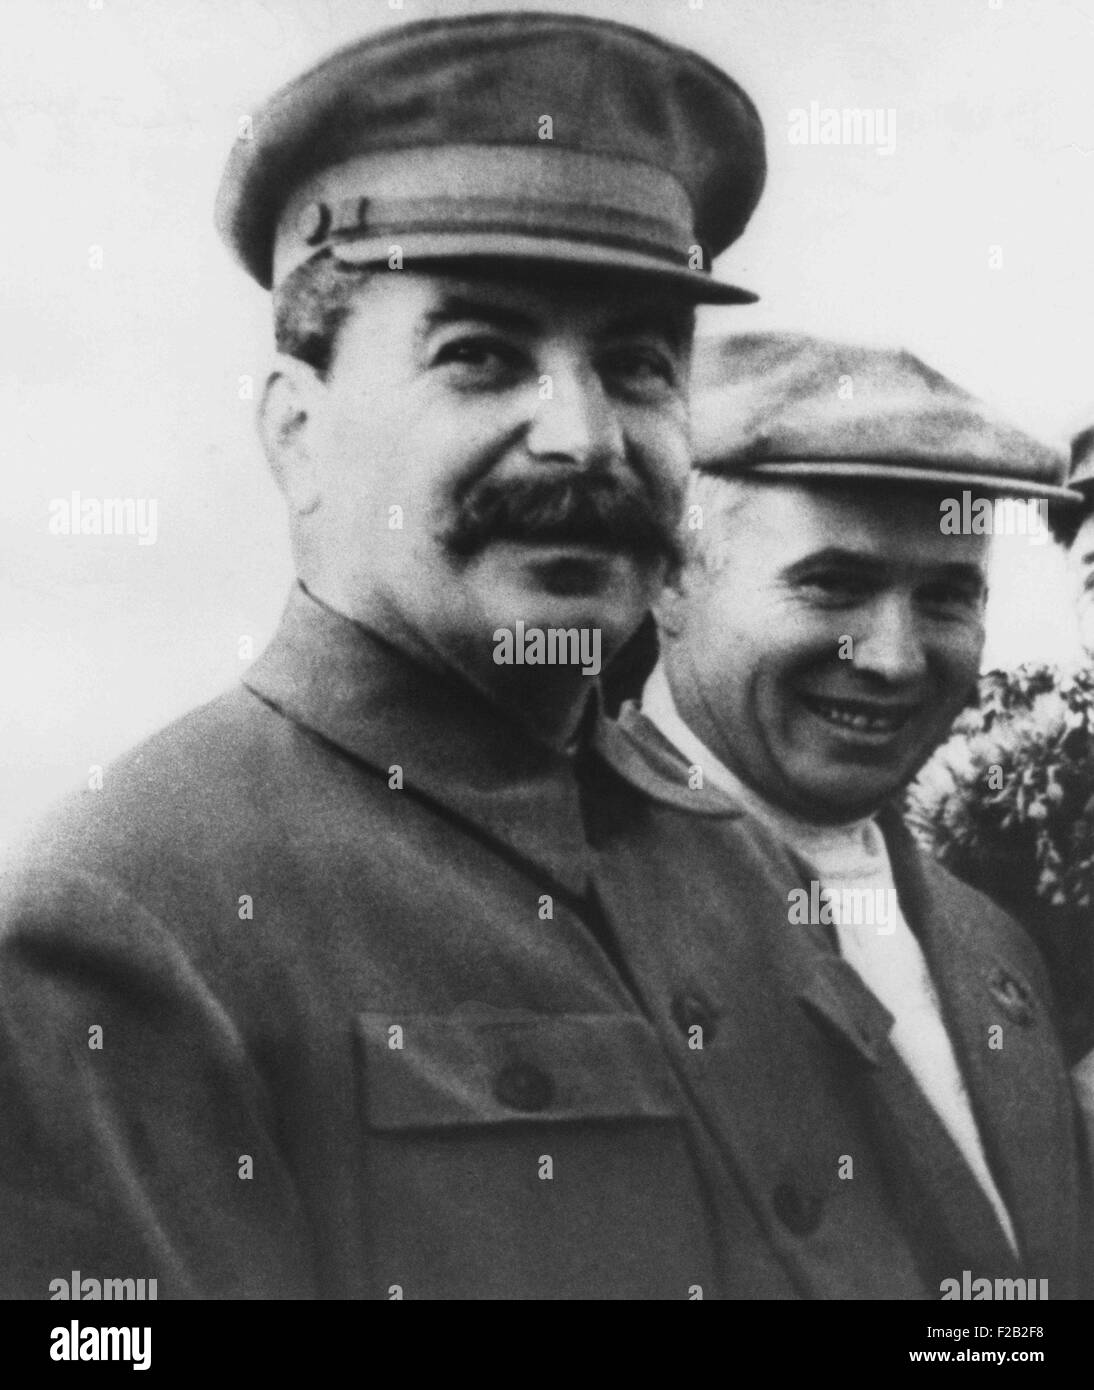 Soviet russo leader Joseph Stalin nel 1938. A destra è Nikita Khrushchev, membro del Comitato Centrale del Partito Comunista e leader del partito in Ucraina. Essi sono a Shcheilkova aeroporto vicino a Mosca. (CSU 2015 8 536) Foto Stock